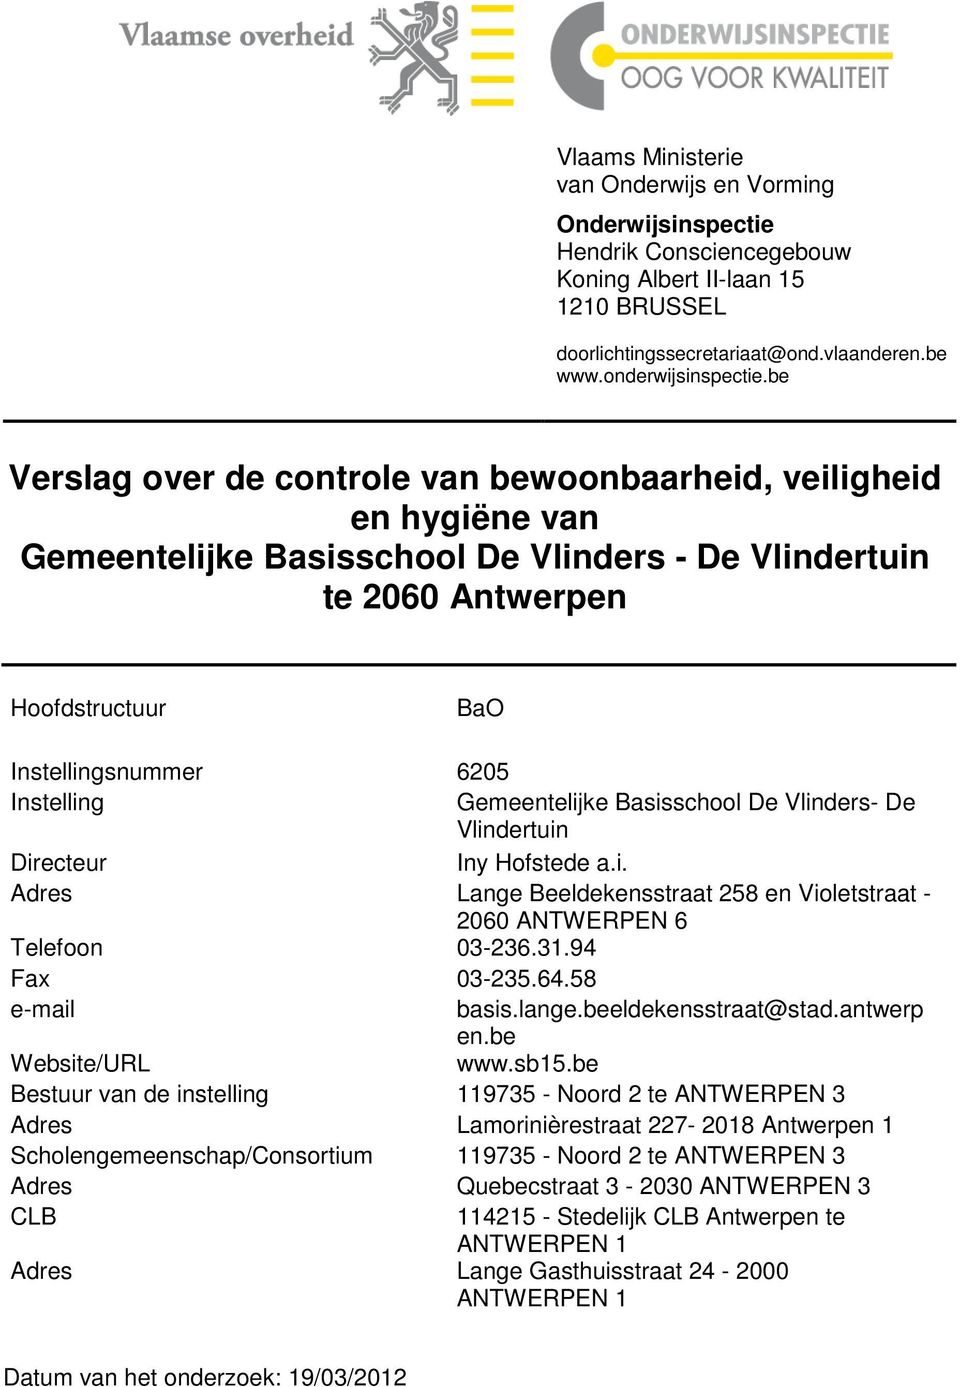 Gemeentelijke Basisschool De Vlinders- De Vlindertuin Directeur Iny Hofstede a.i. Adres Lange Beeldekensstraat 258 en Violetstraat - 2060 ANTWERPEN 6 Telefoon 03-236.31.94 Fax 03-235.64.